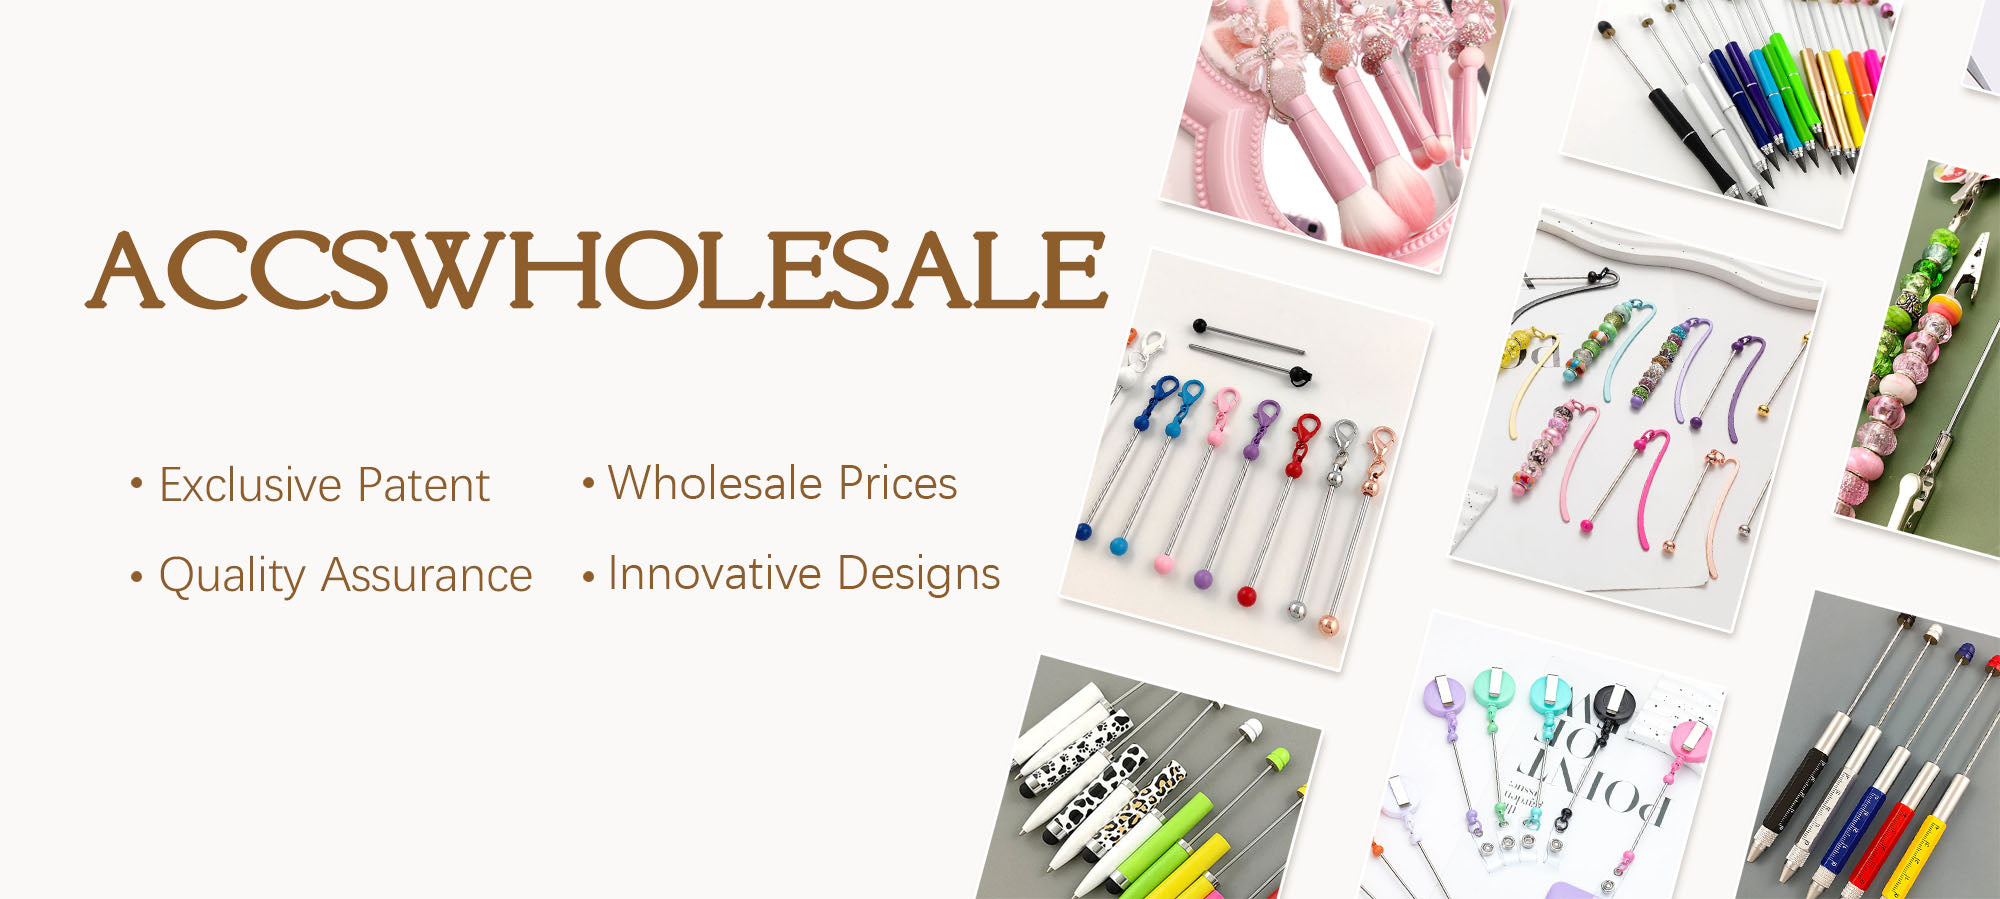 Accswholesale-Fashion Accessories Wholesale Shop